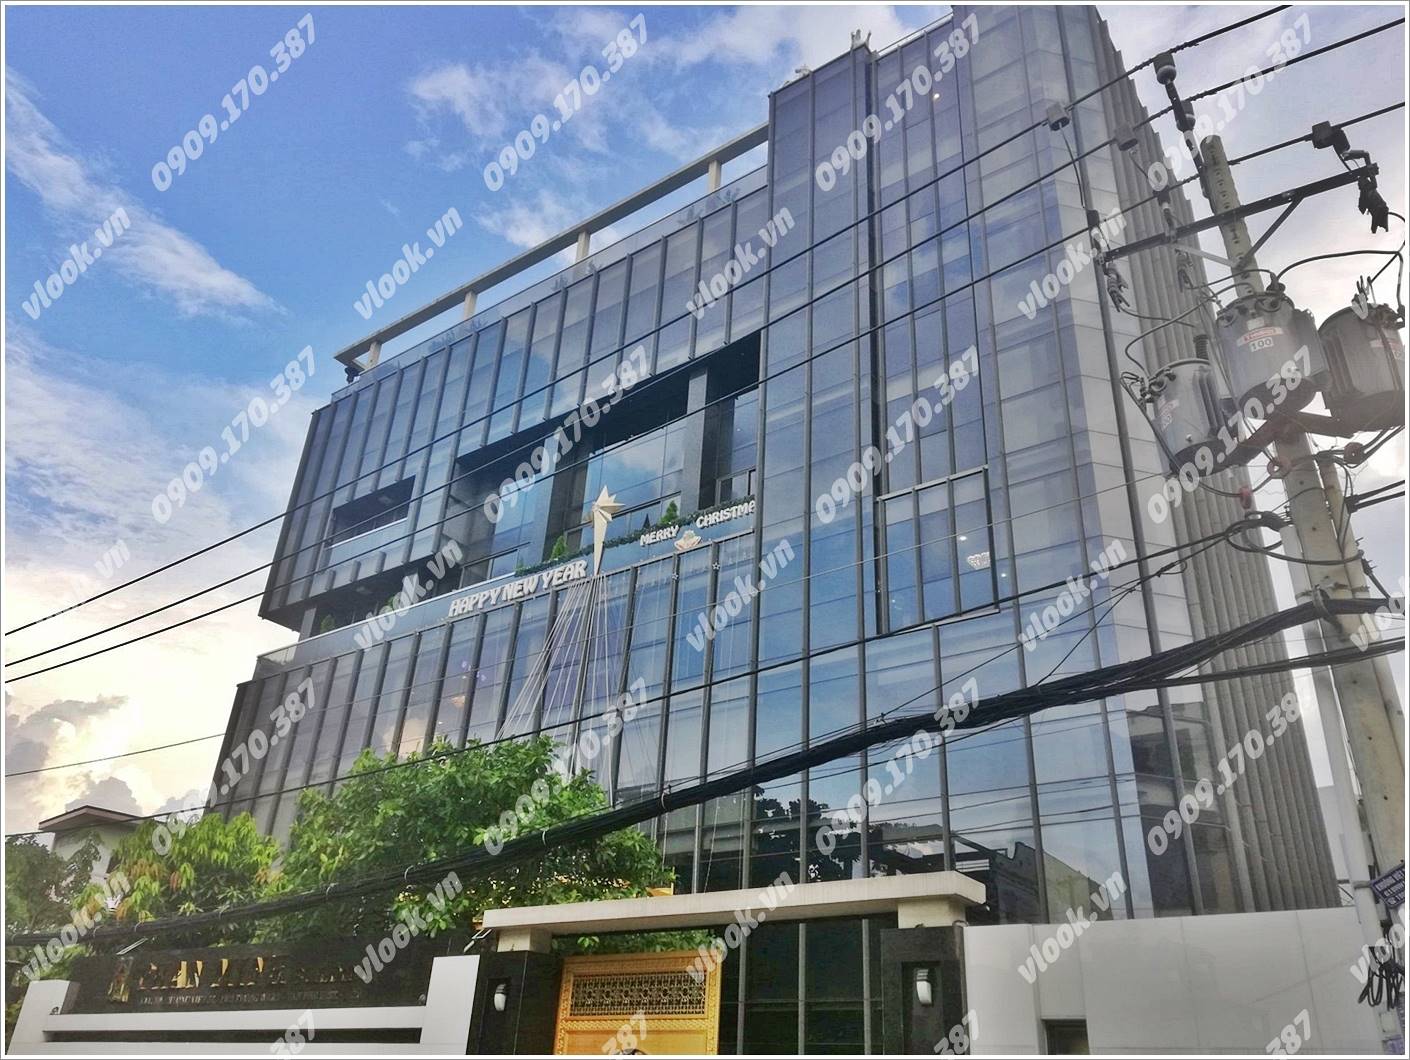 Cao ốc cho thuê văn phòng Phan Minh Building, Khuông Việt, Quận Tân Phú, TPHCM - vlook.vn